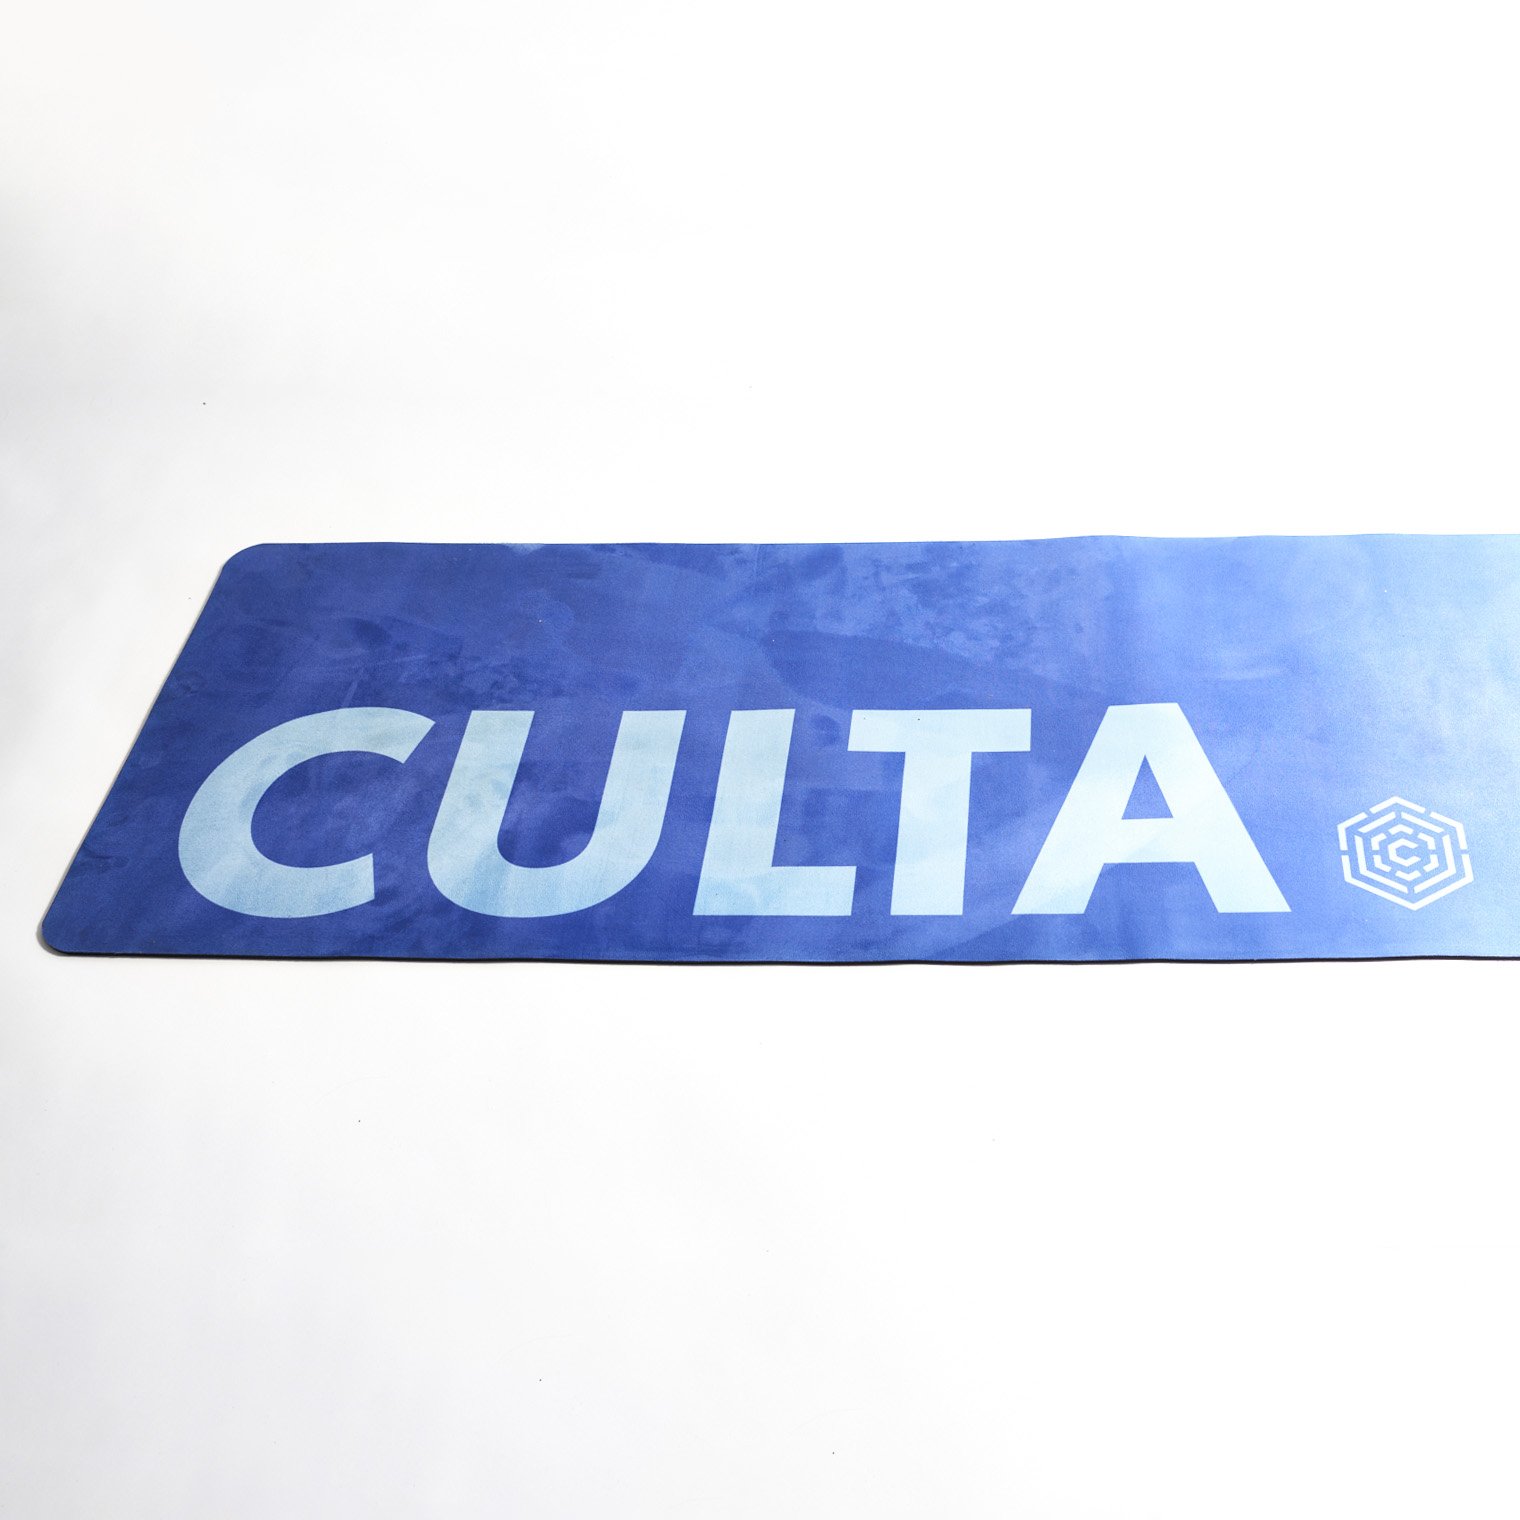 20-12-8-Culta-product11095.jpg